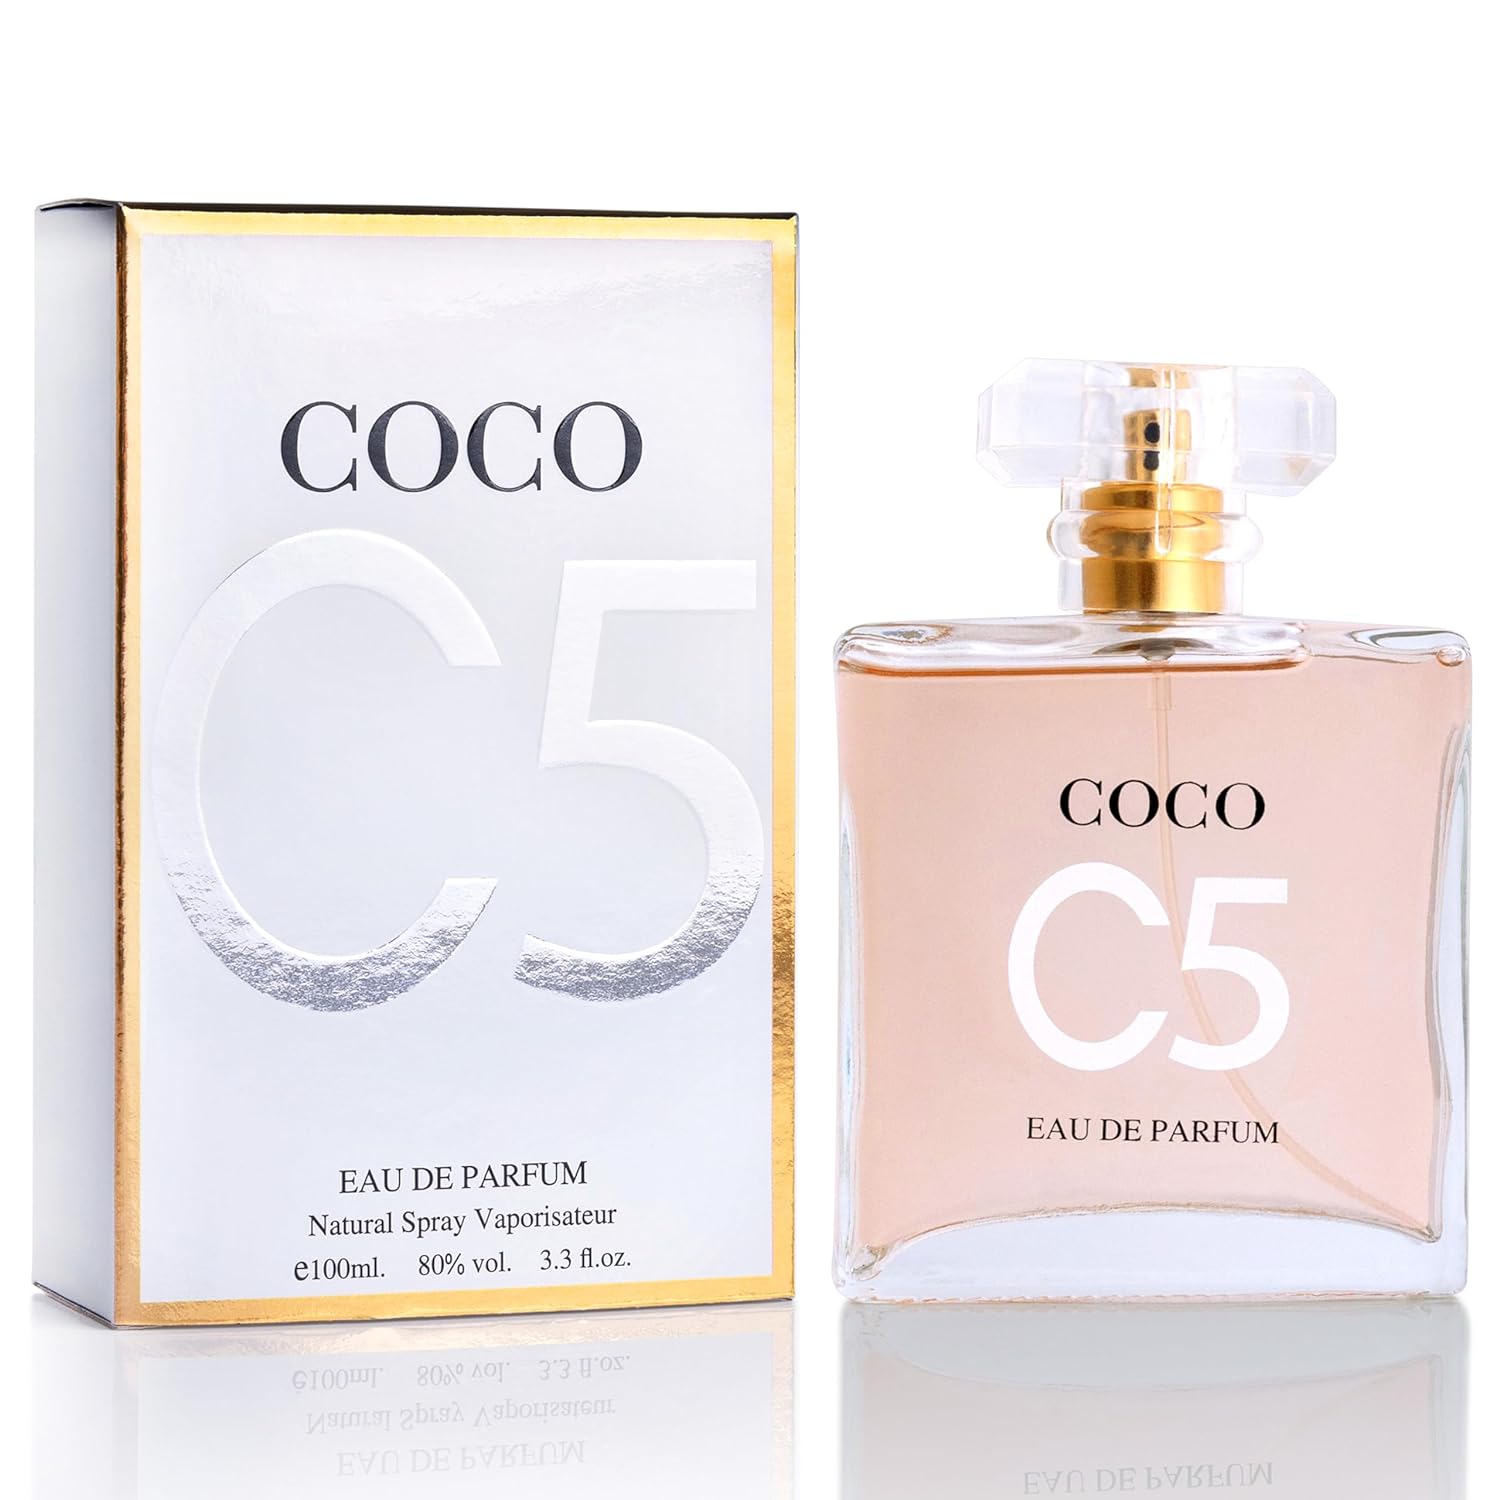 Coco-C5-Eau-De-Parfum-para-mujer-7721